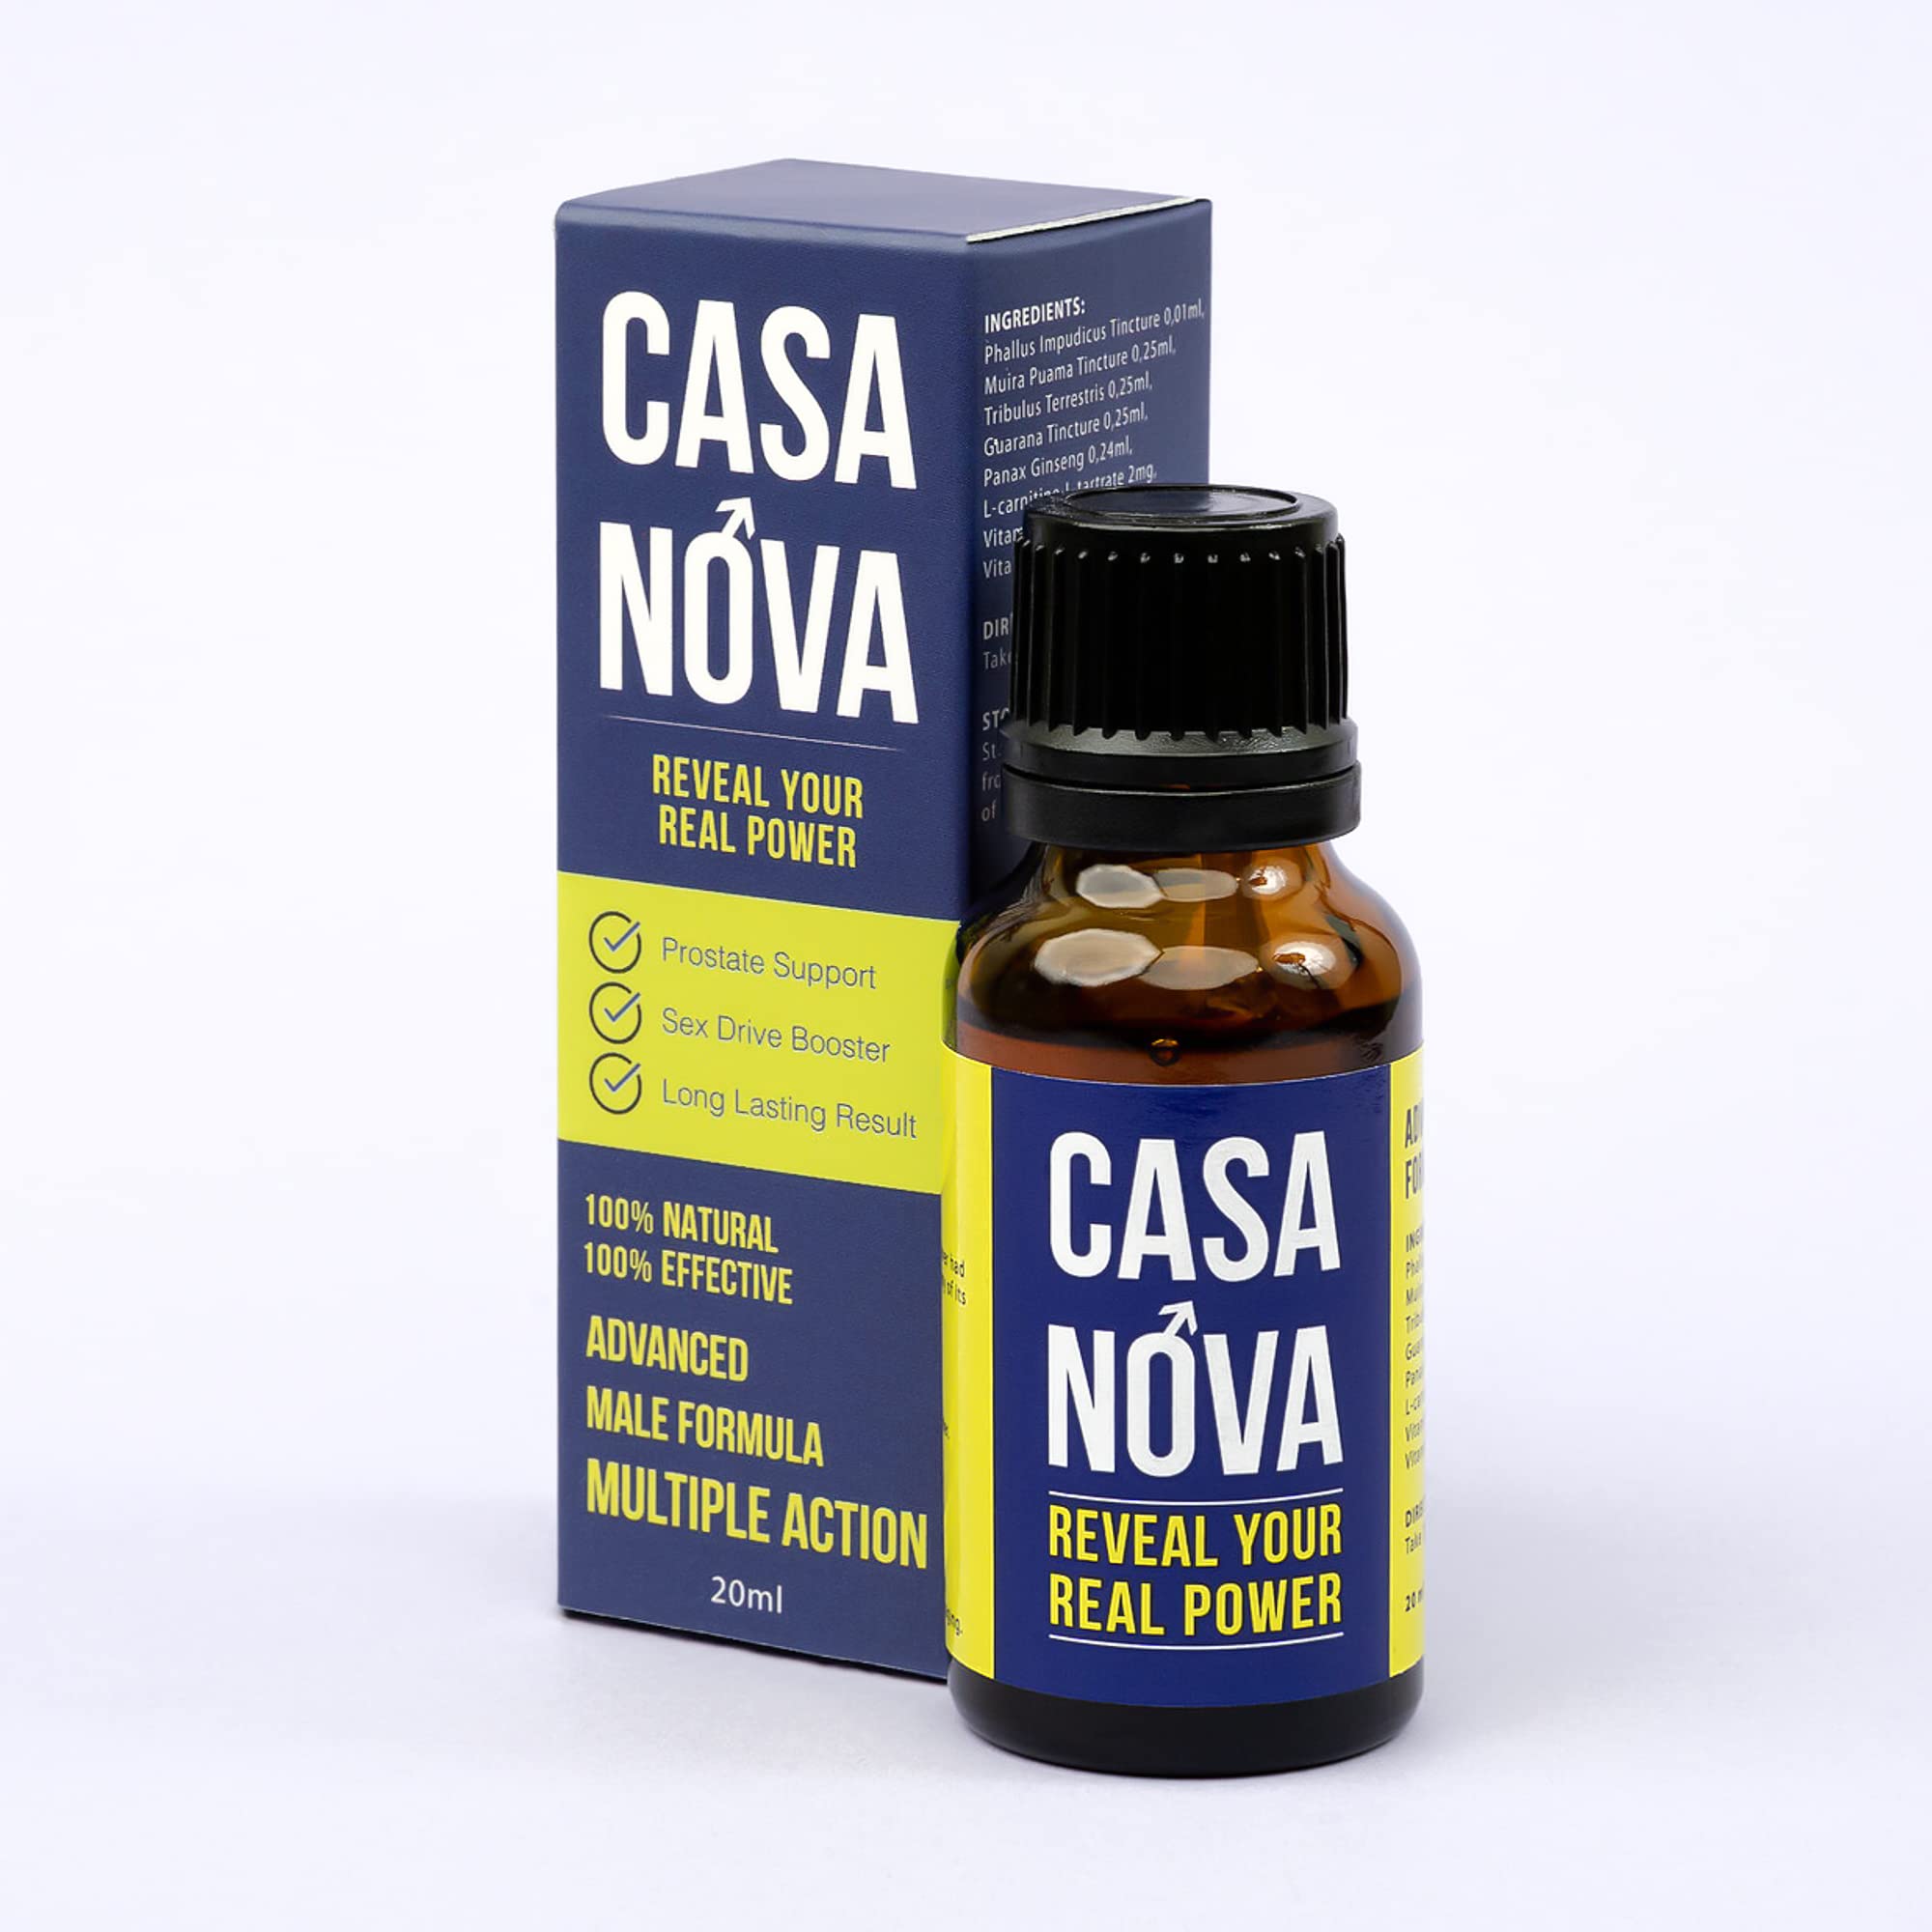 Casa Nova - kde koupit - v lékárně - Dr Max - Heureka - zda webu výrobce